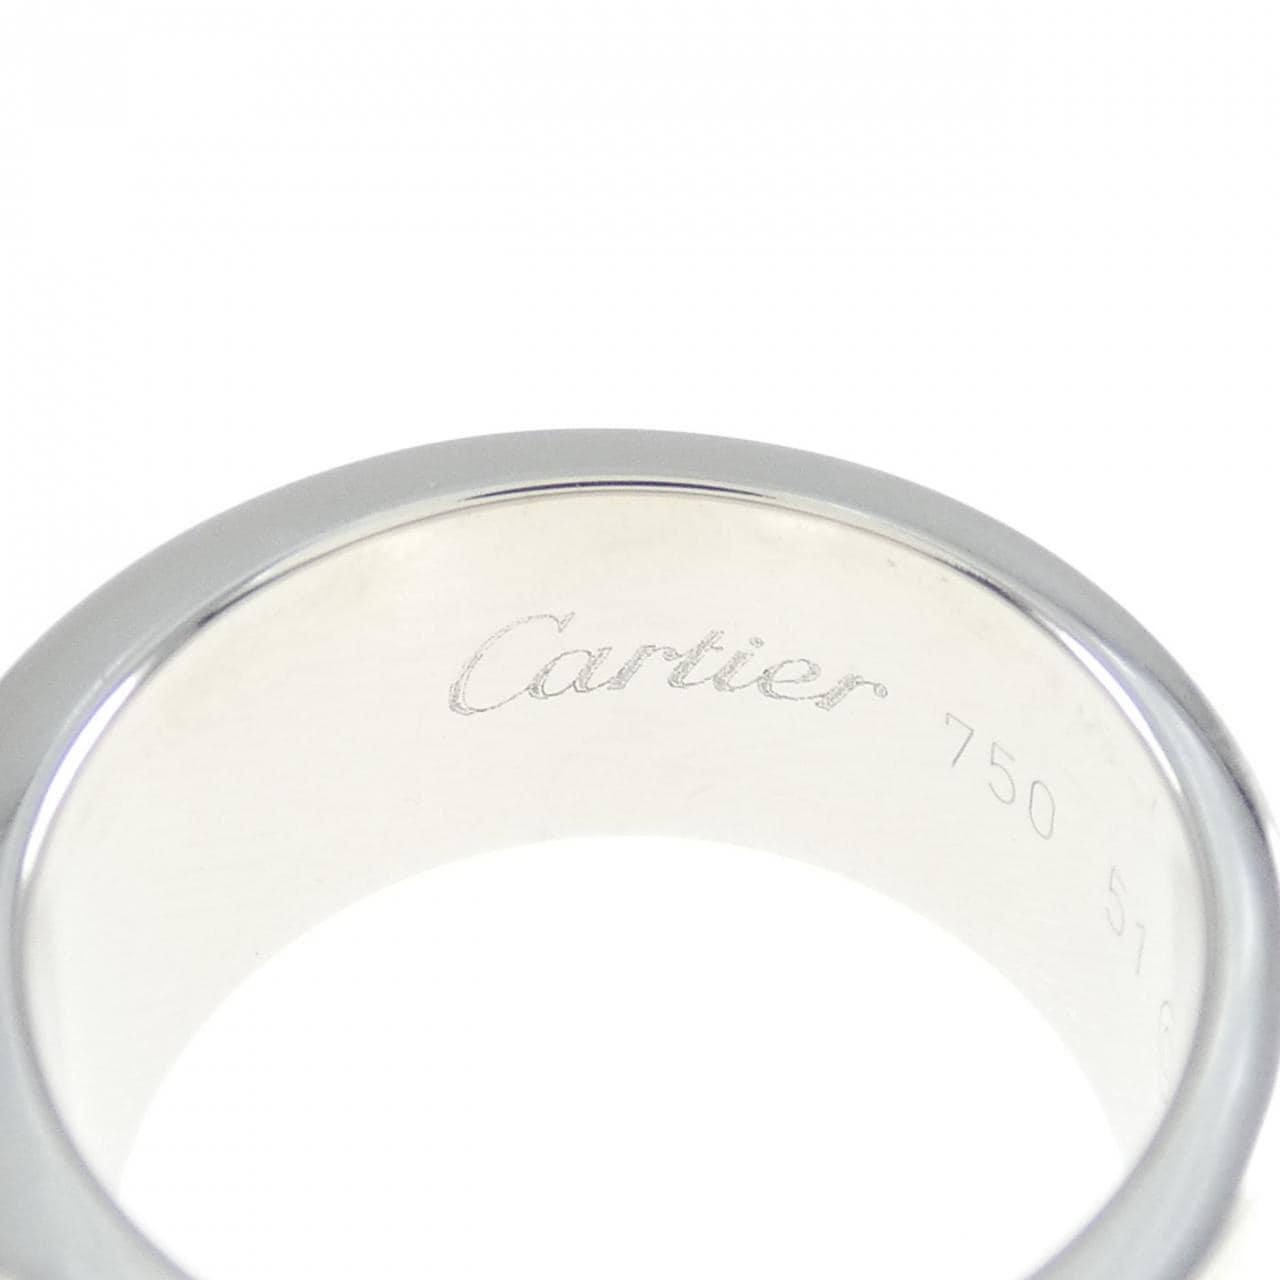 Cartier C2切割88戒指